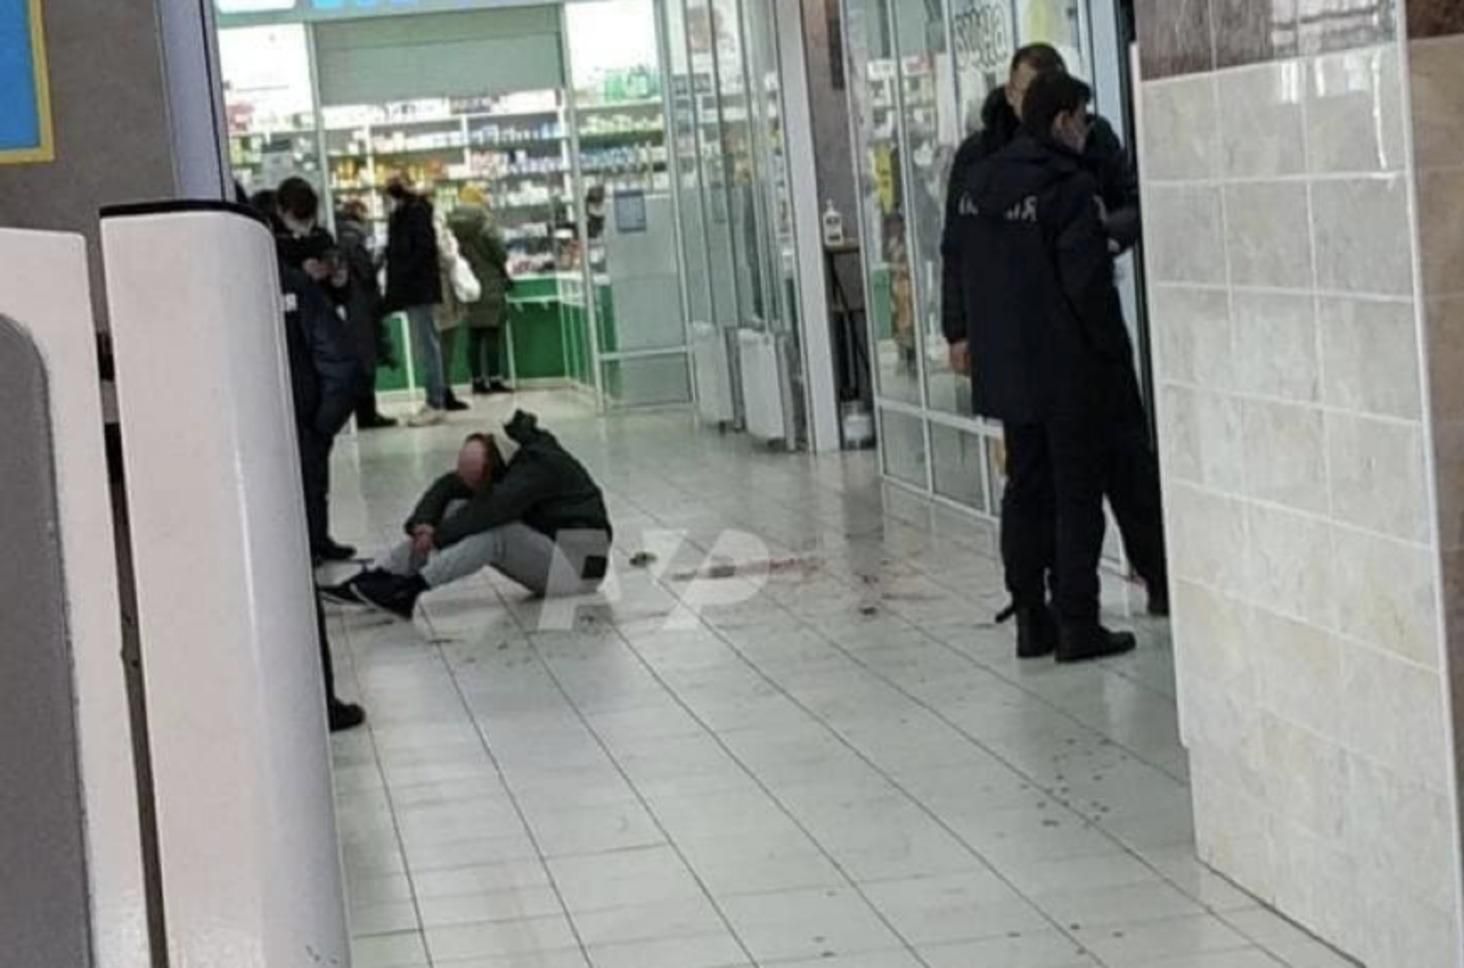 Чоловік з ножем накинувся на людей у супермаркеті в Полтаві: є жертва - Україна новини - 24 Канал